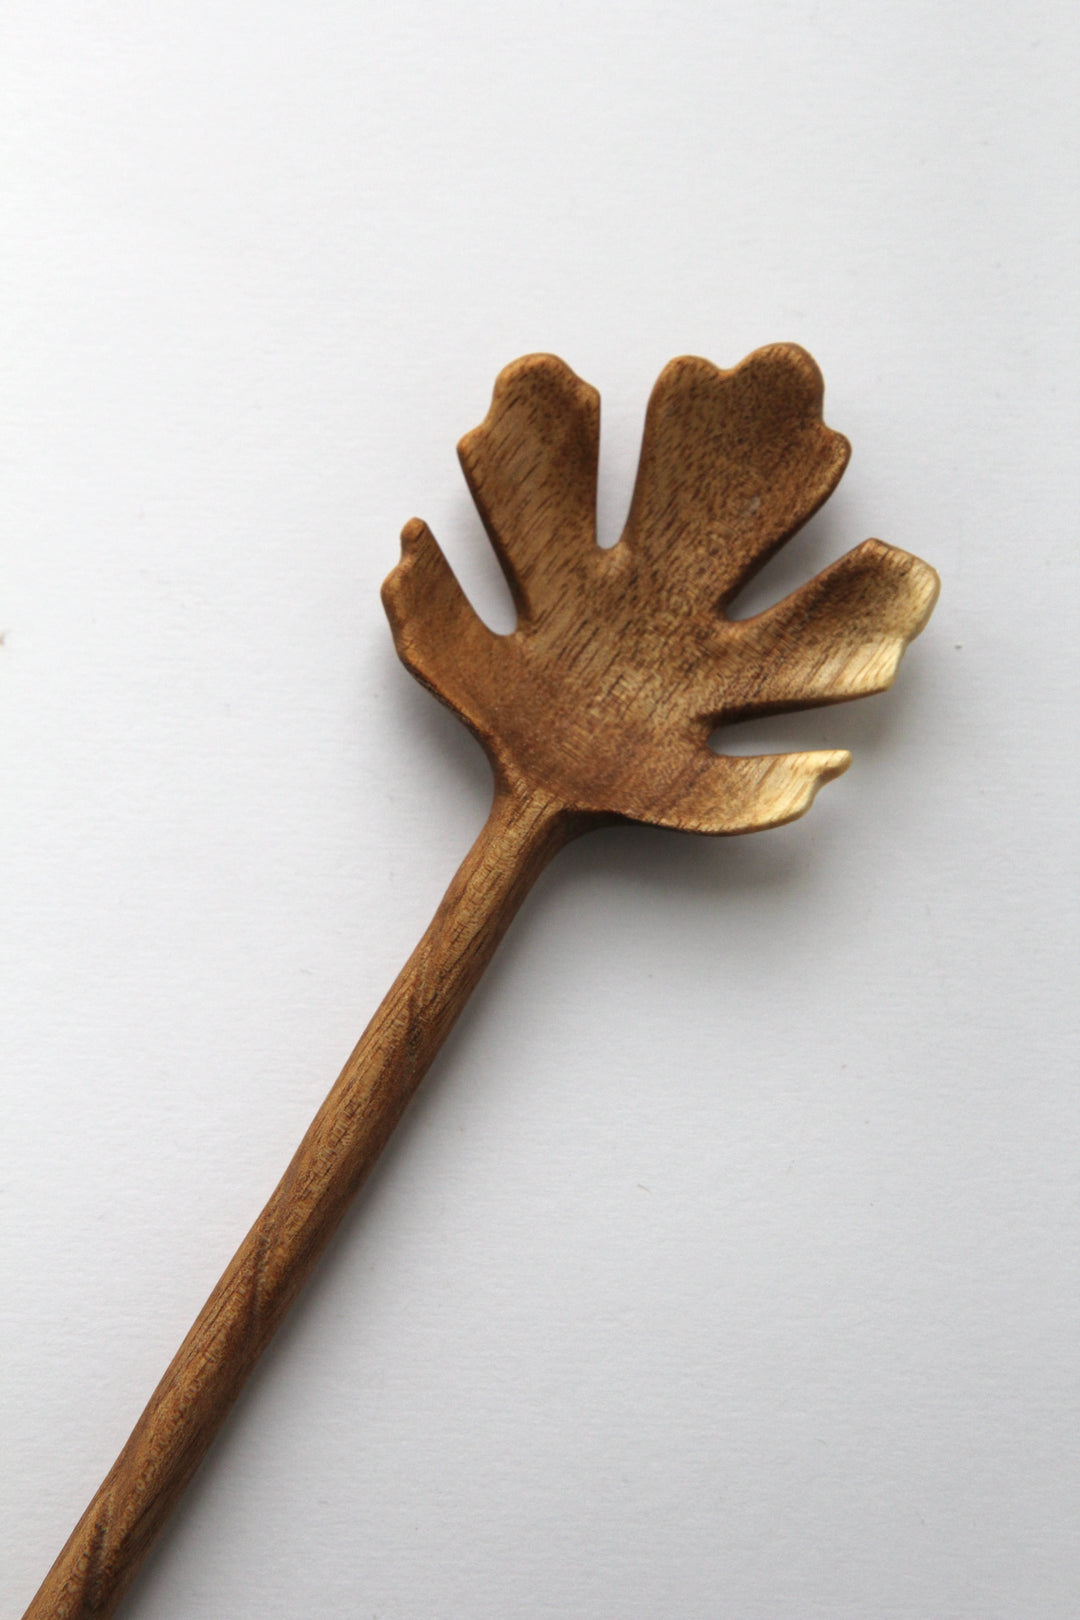 Carved Wooden Spoon Leaf Bowl